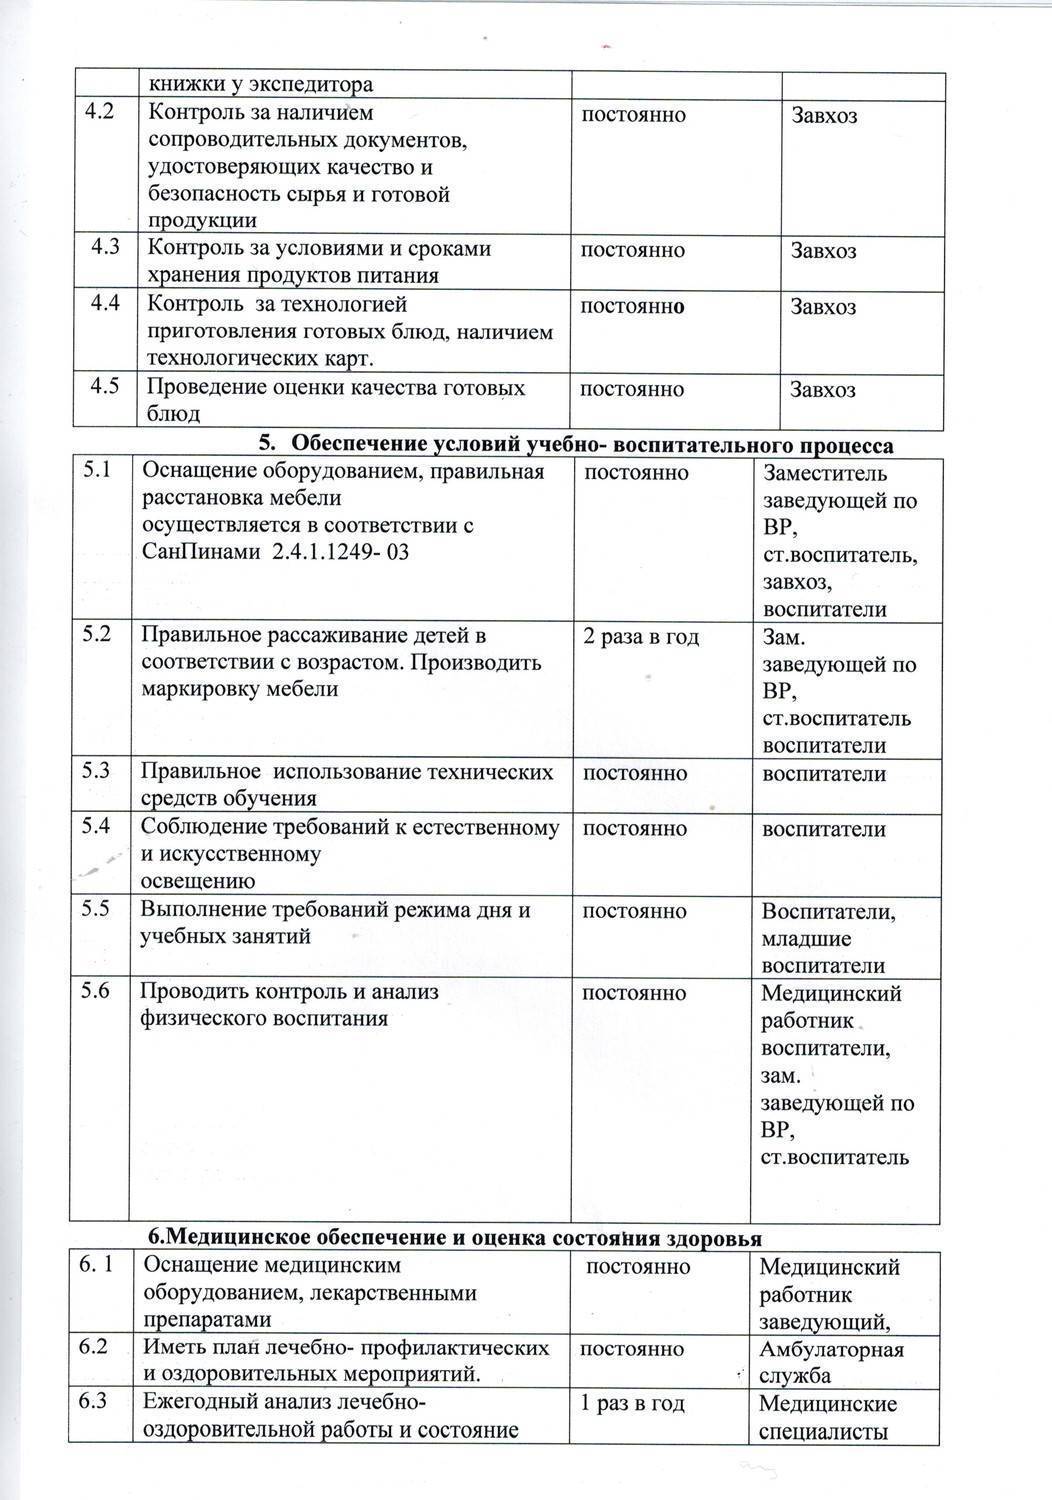 Программа производственного контроля предприятия в санкт-петербурге